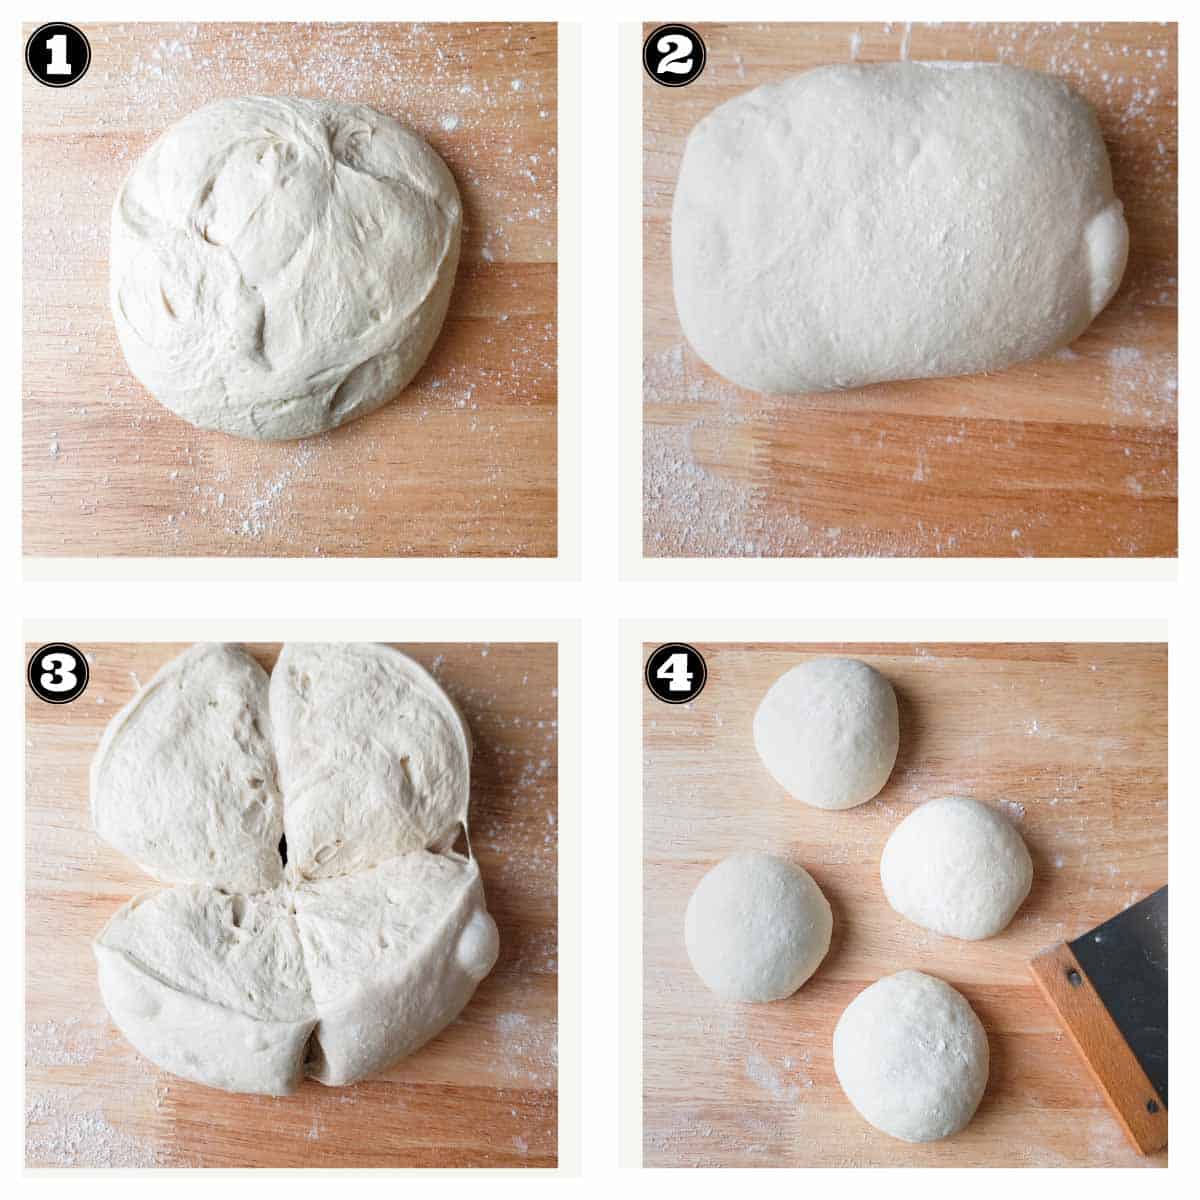 dividing the dough into 4 parts for the sourdough baguette recipe